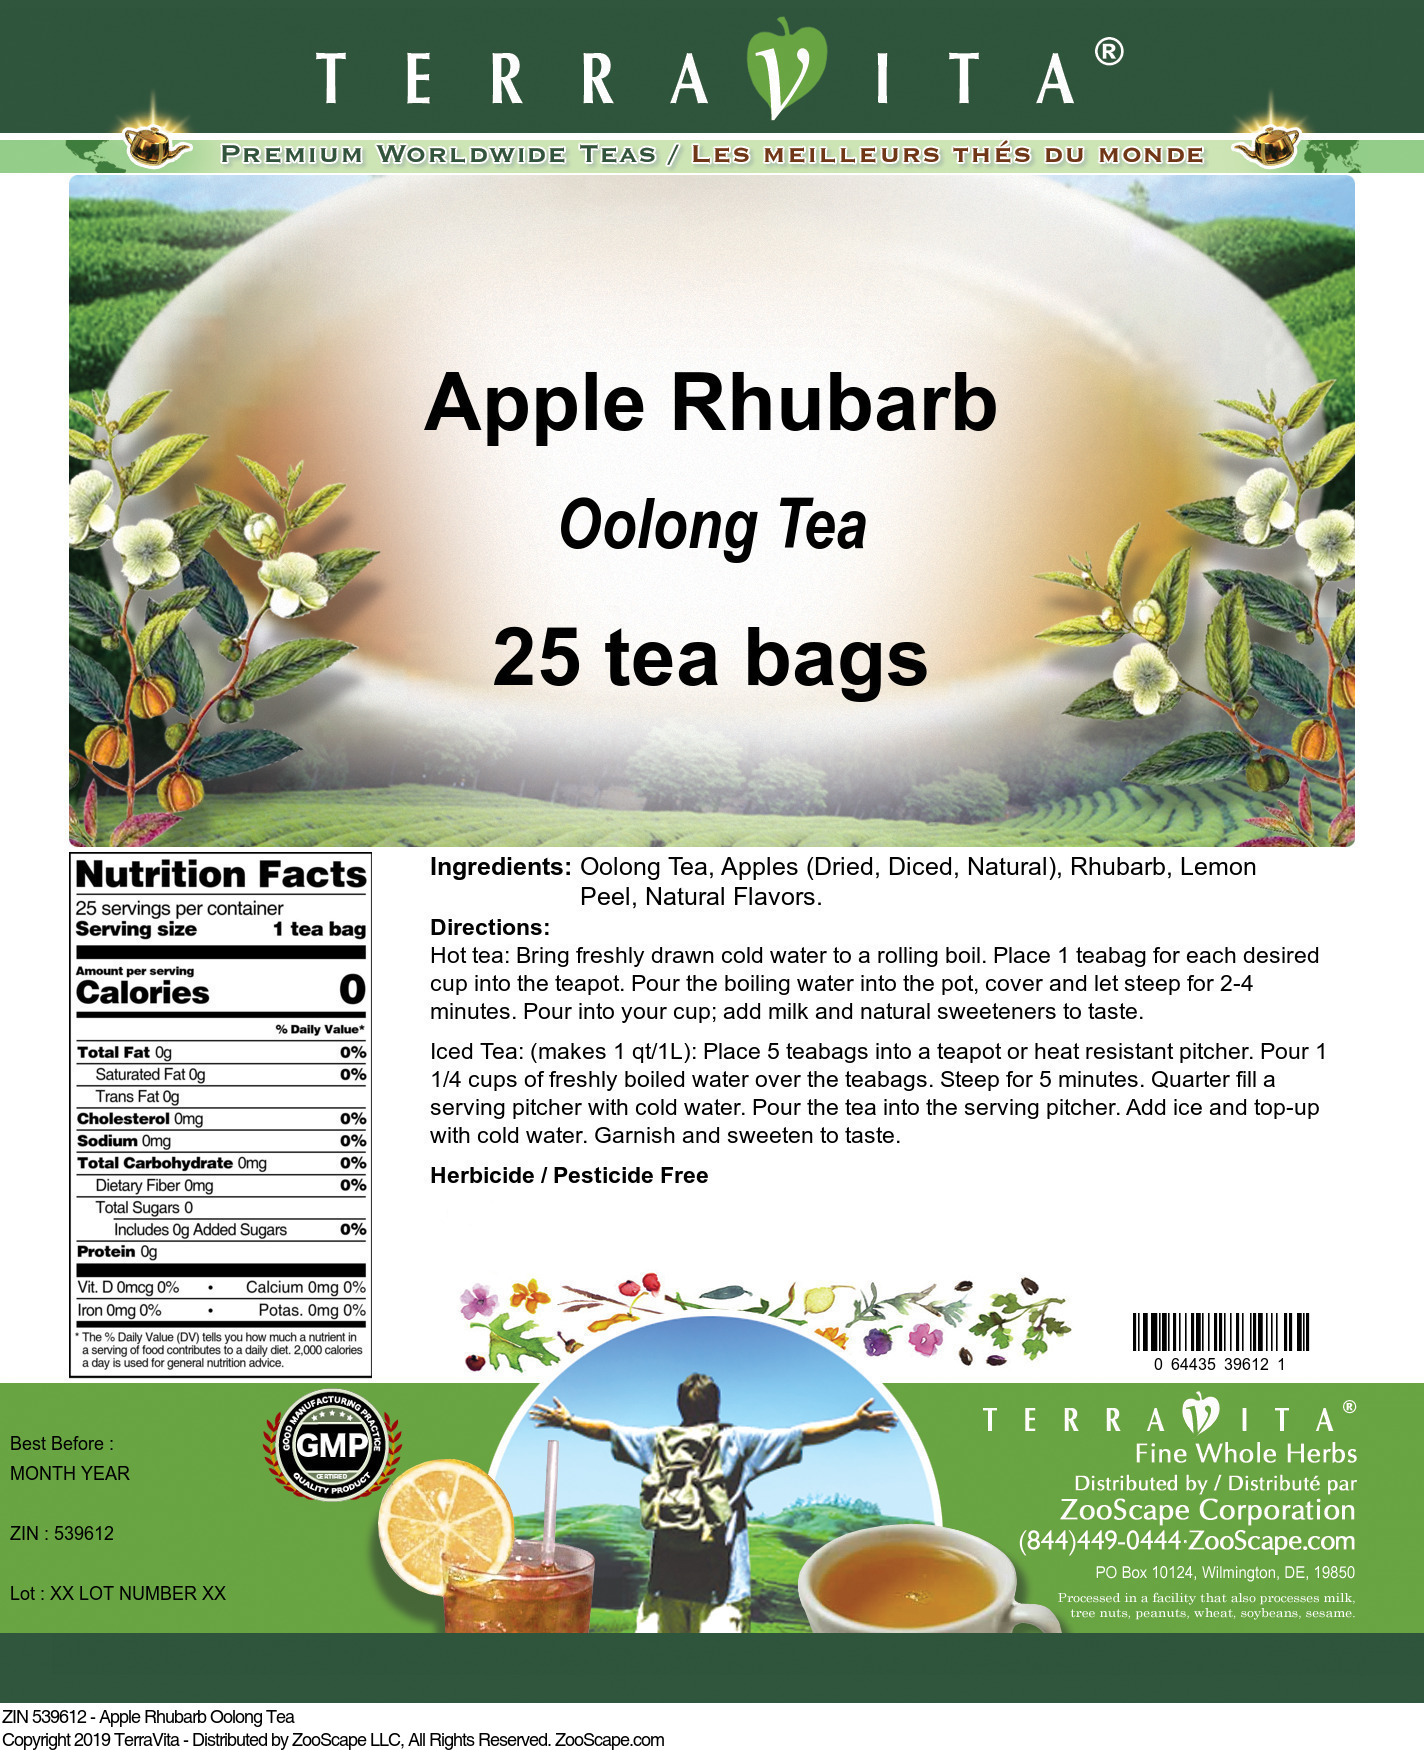 Apple Rhubarb Oolong Tea - Label